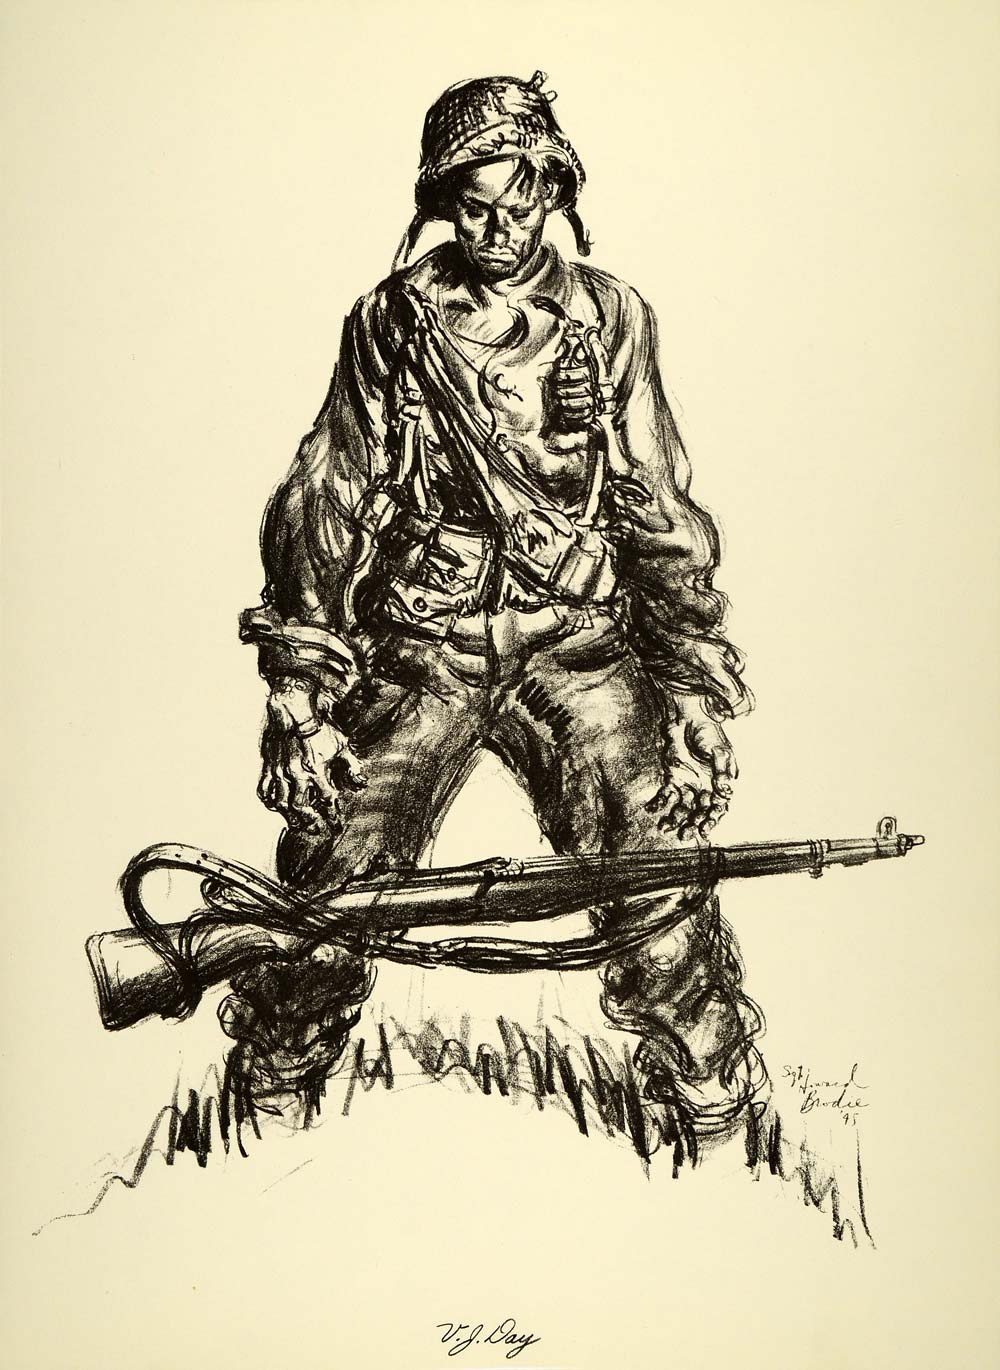 1963 Print Howard Brodie WWII Art Victory Japan Surrender VJ Day Soldier Rifle